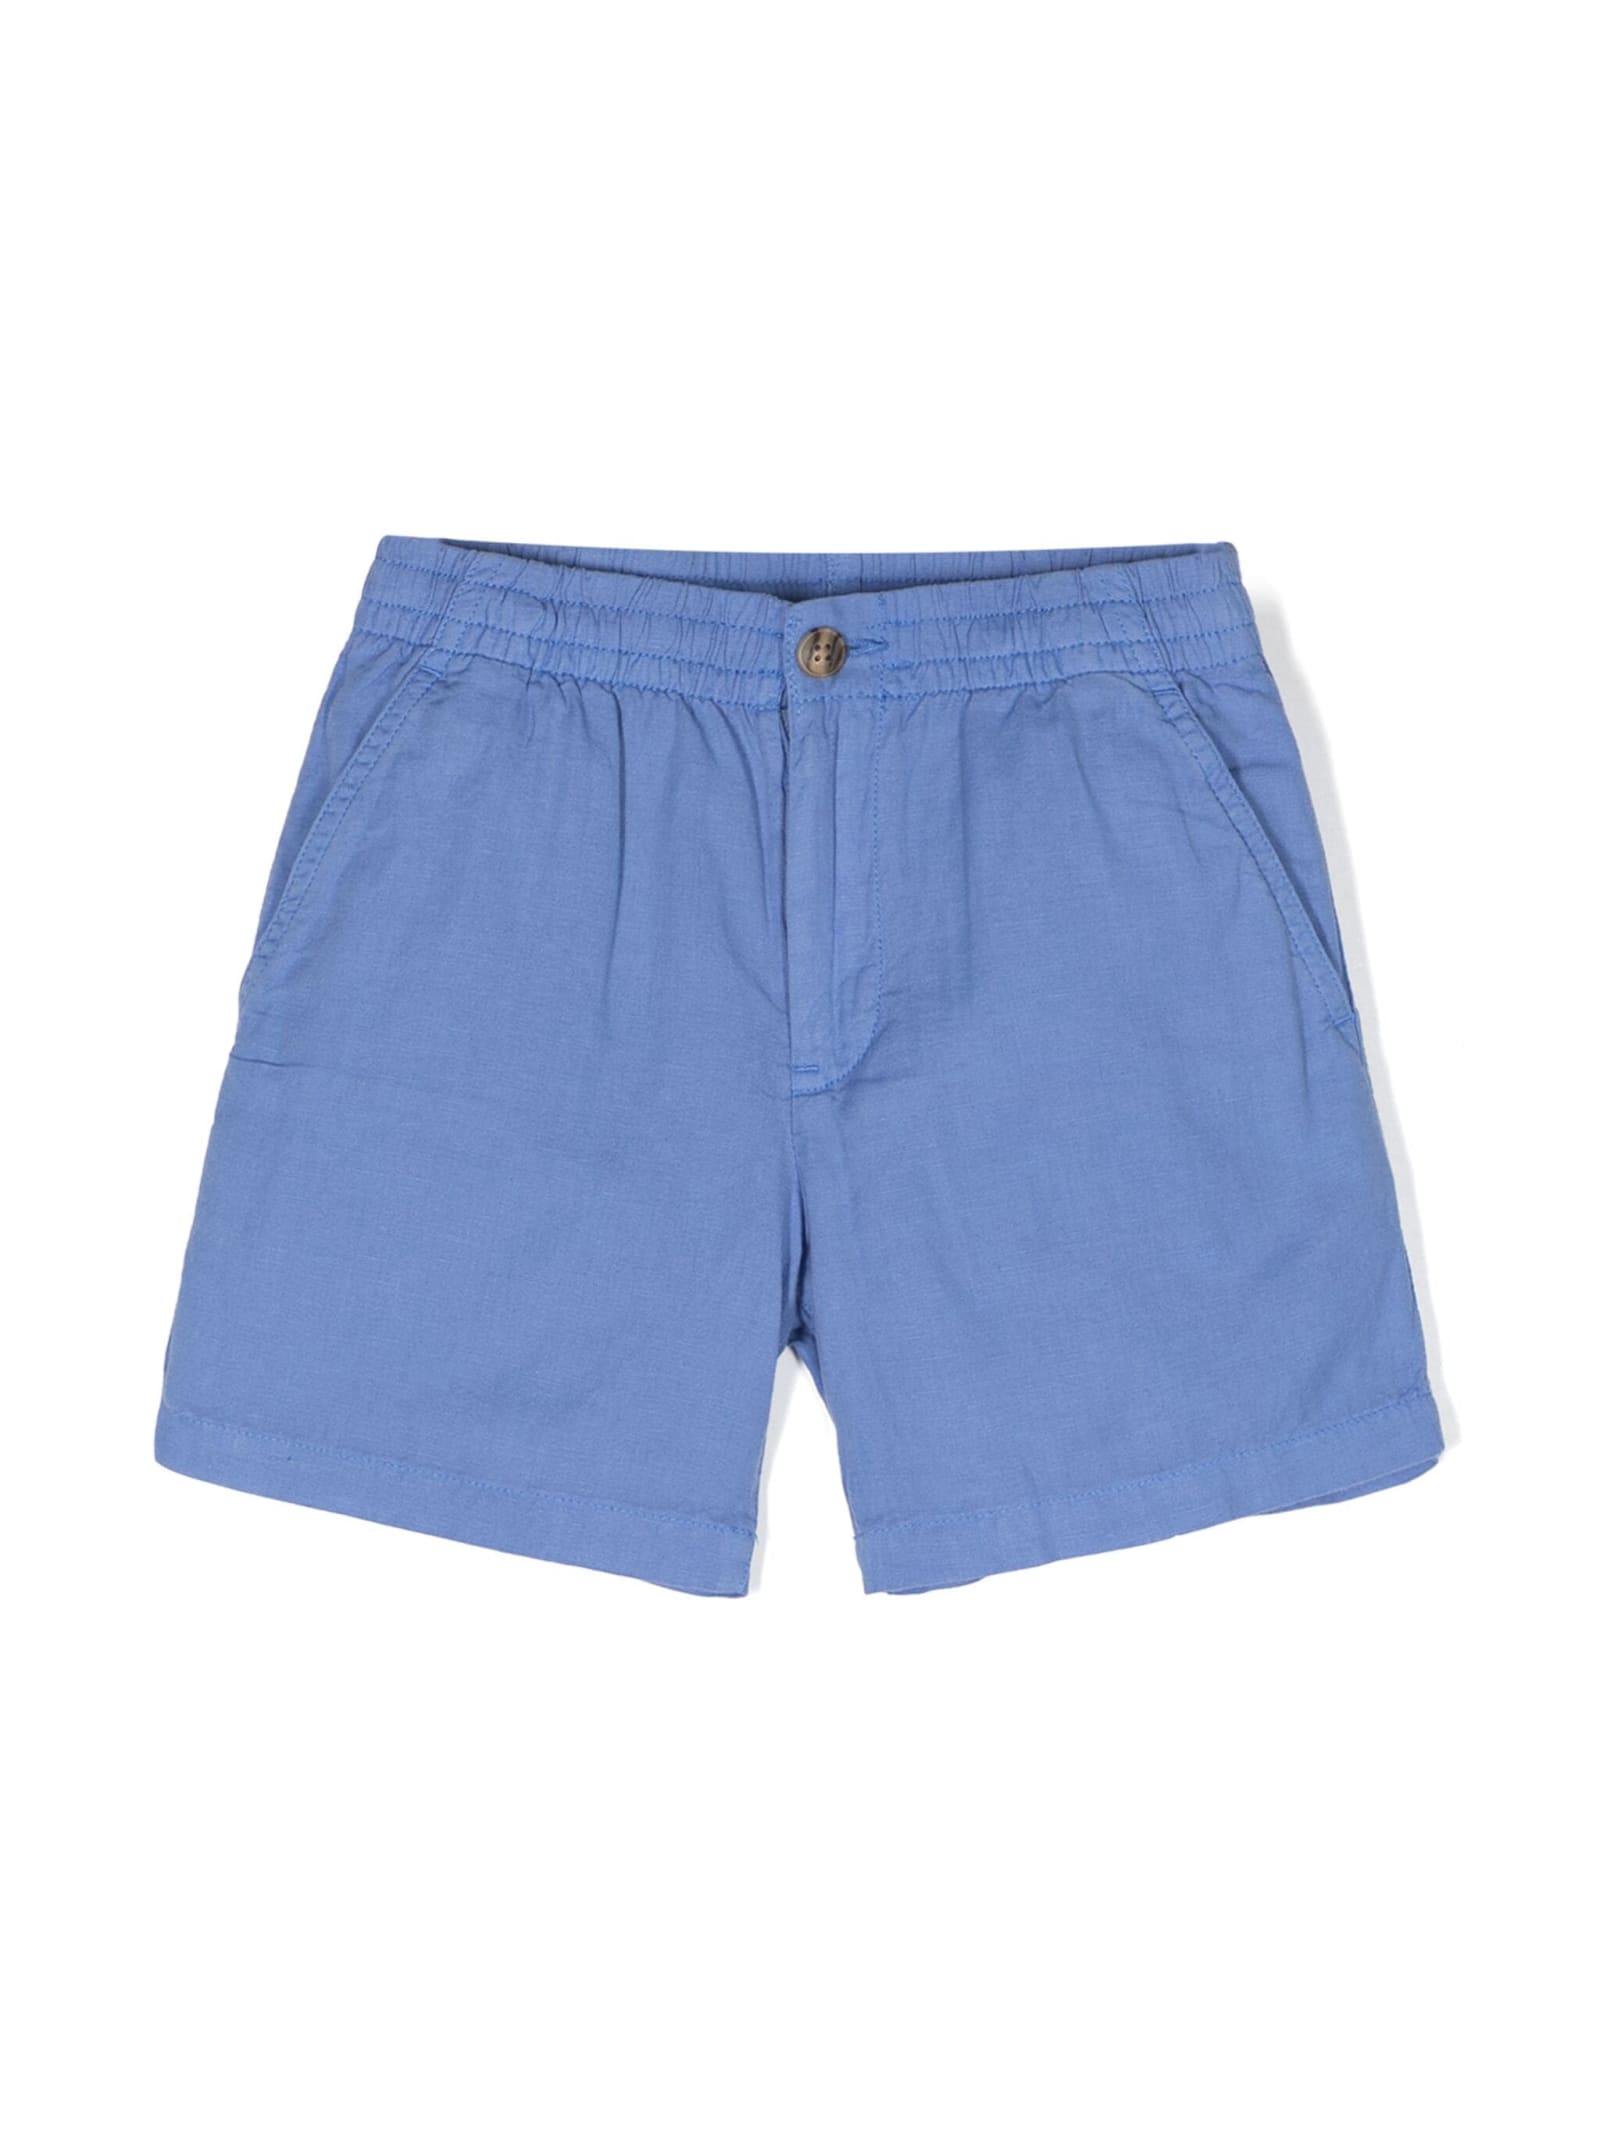 Ralph Lauren Cerulean Blue Linen And Cotton Bermuda Shorts